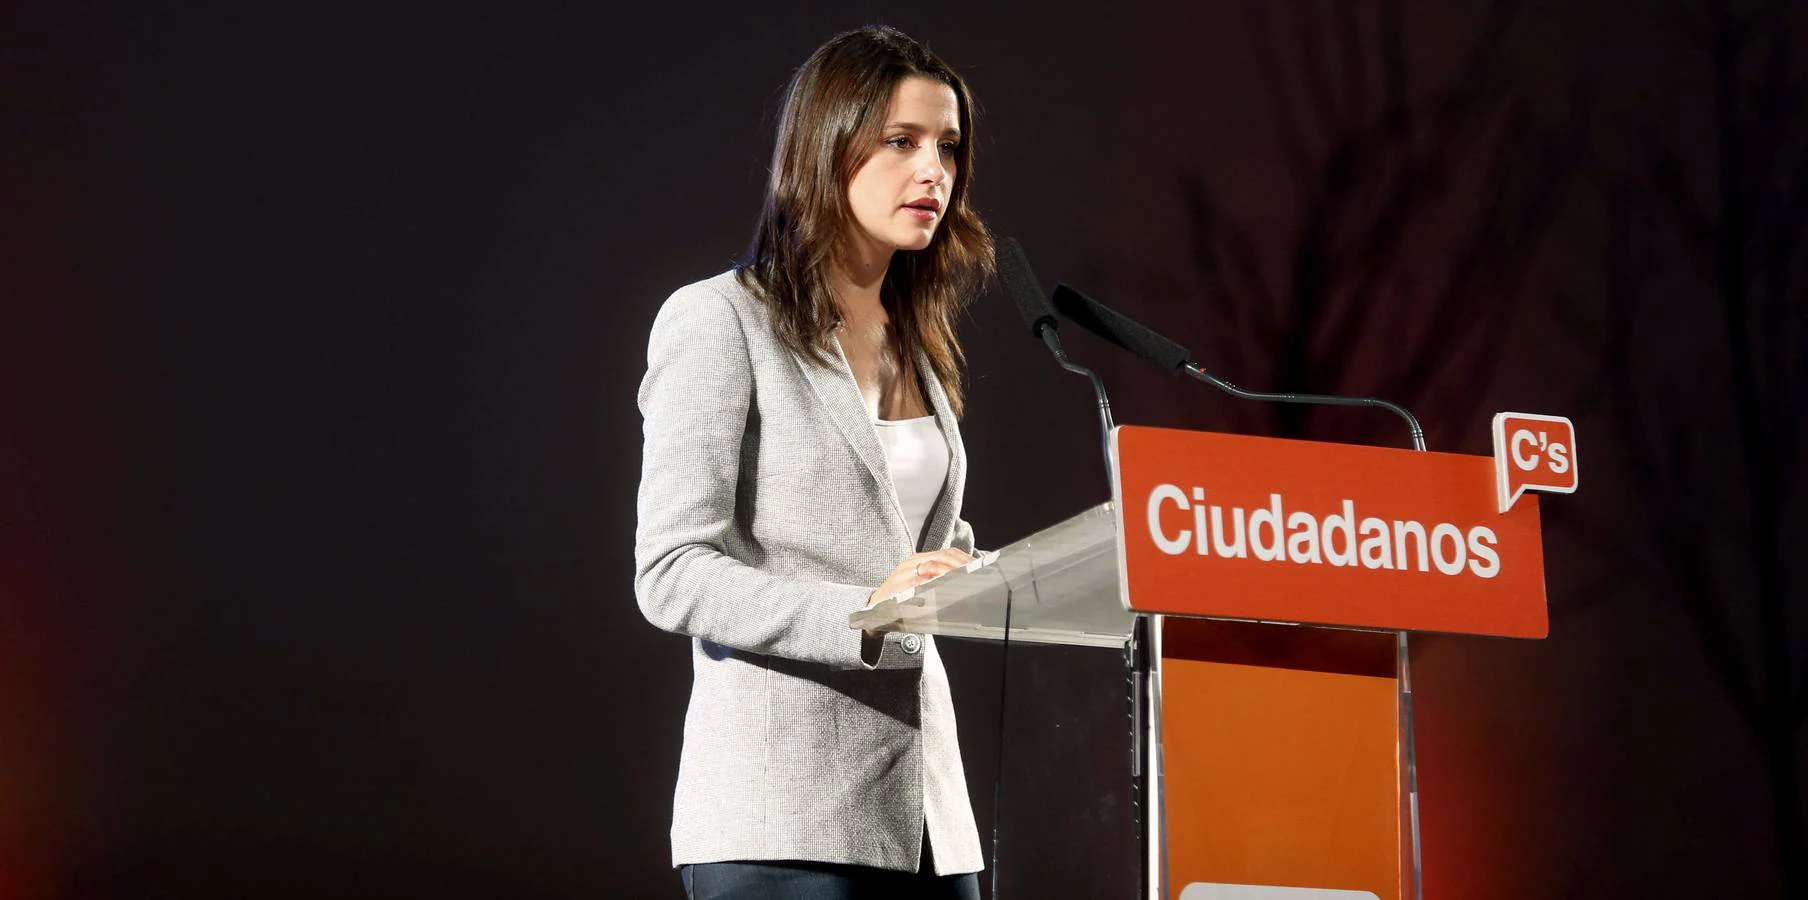 La presidenta y portavoz de Ciudadanos en Cataluña, Inés Arrimadas es la cuarta más buscada. Es la cara más visible de Ciudadanos después de Rivera. Ha destacado por su capacidad de oratoria y sobre todo, de argumentación